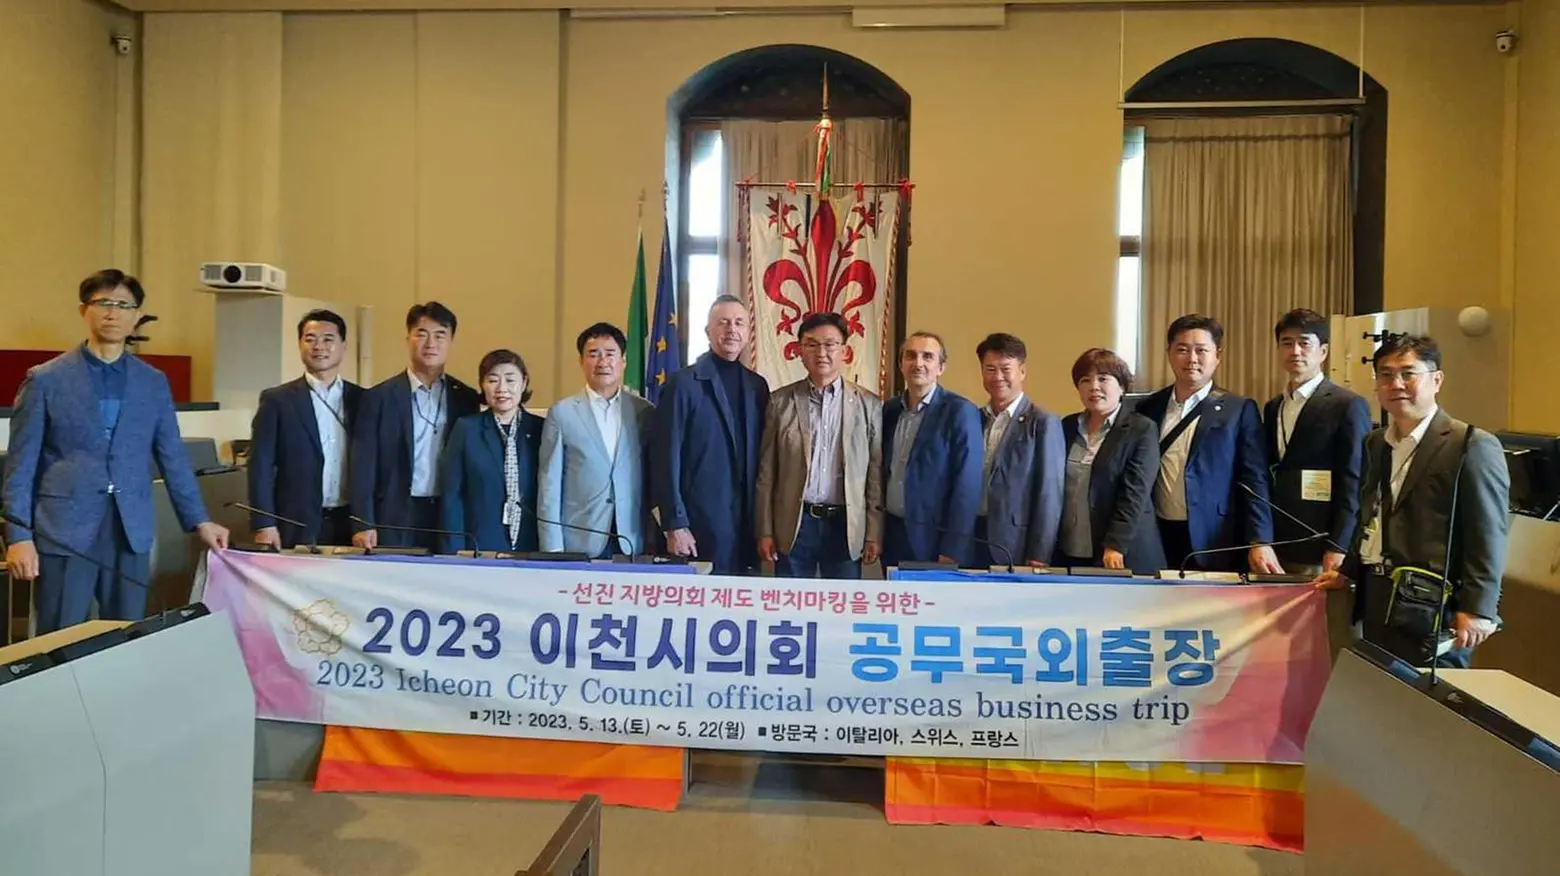 Delegazione da Icheon in Sud Corea  ricevuta a Palazzo Vecchio  Scambi culturali in arrivo